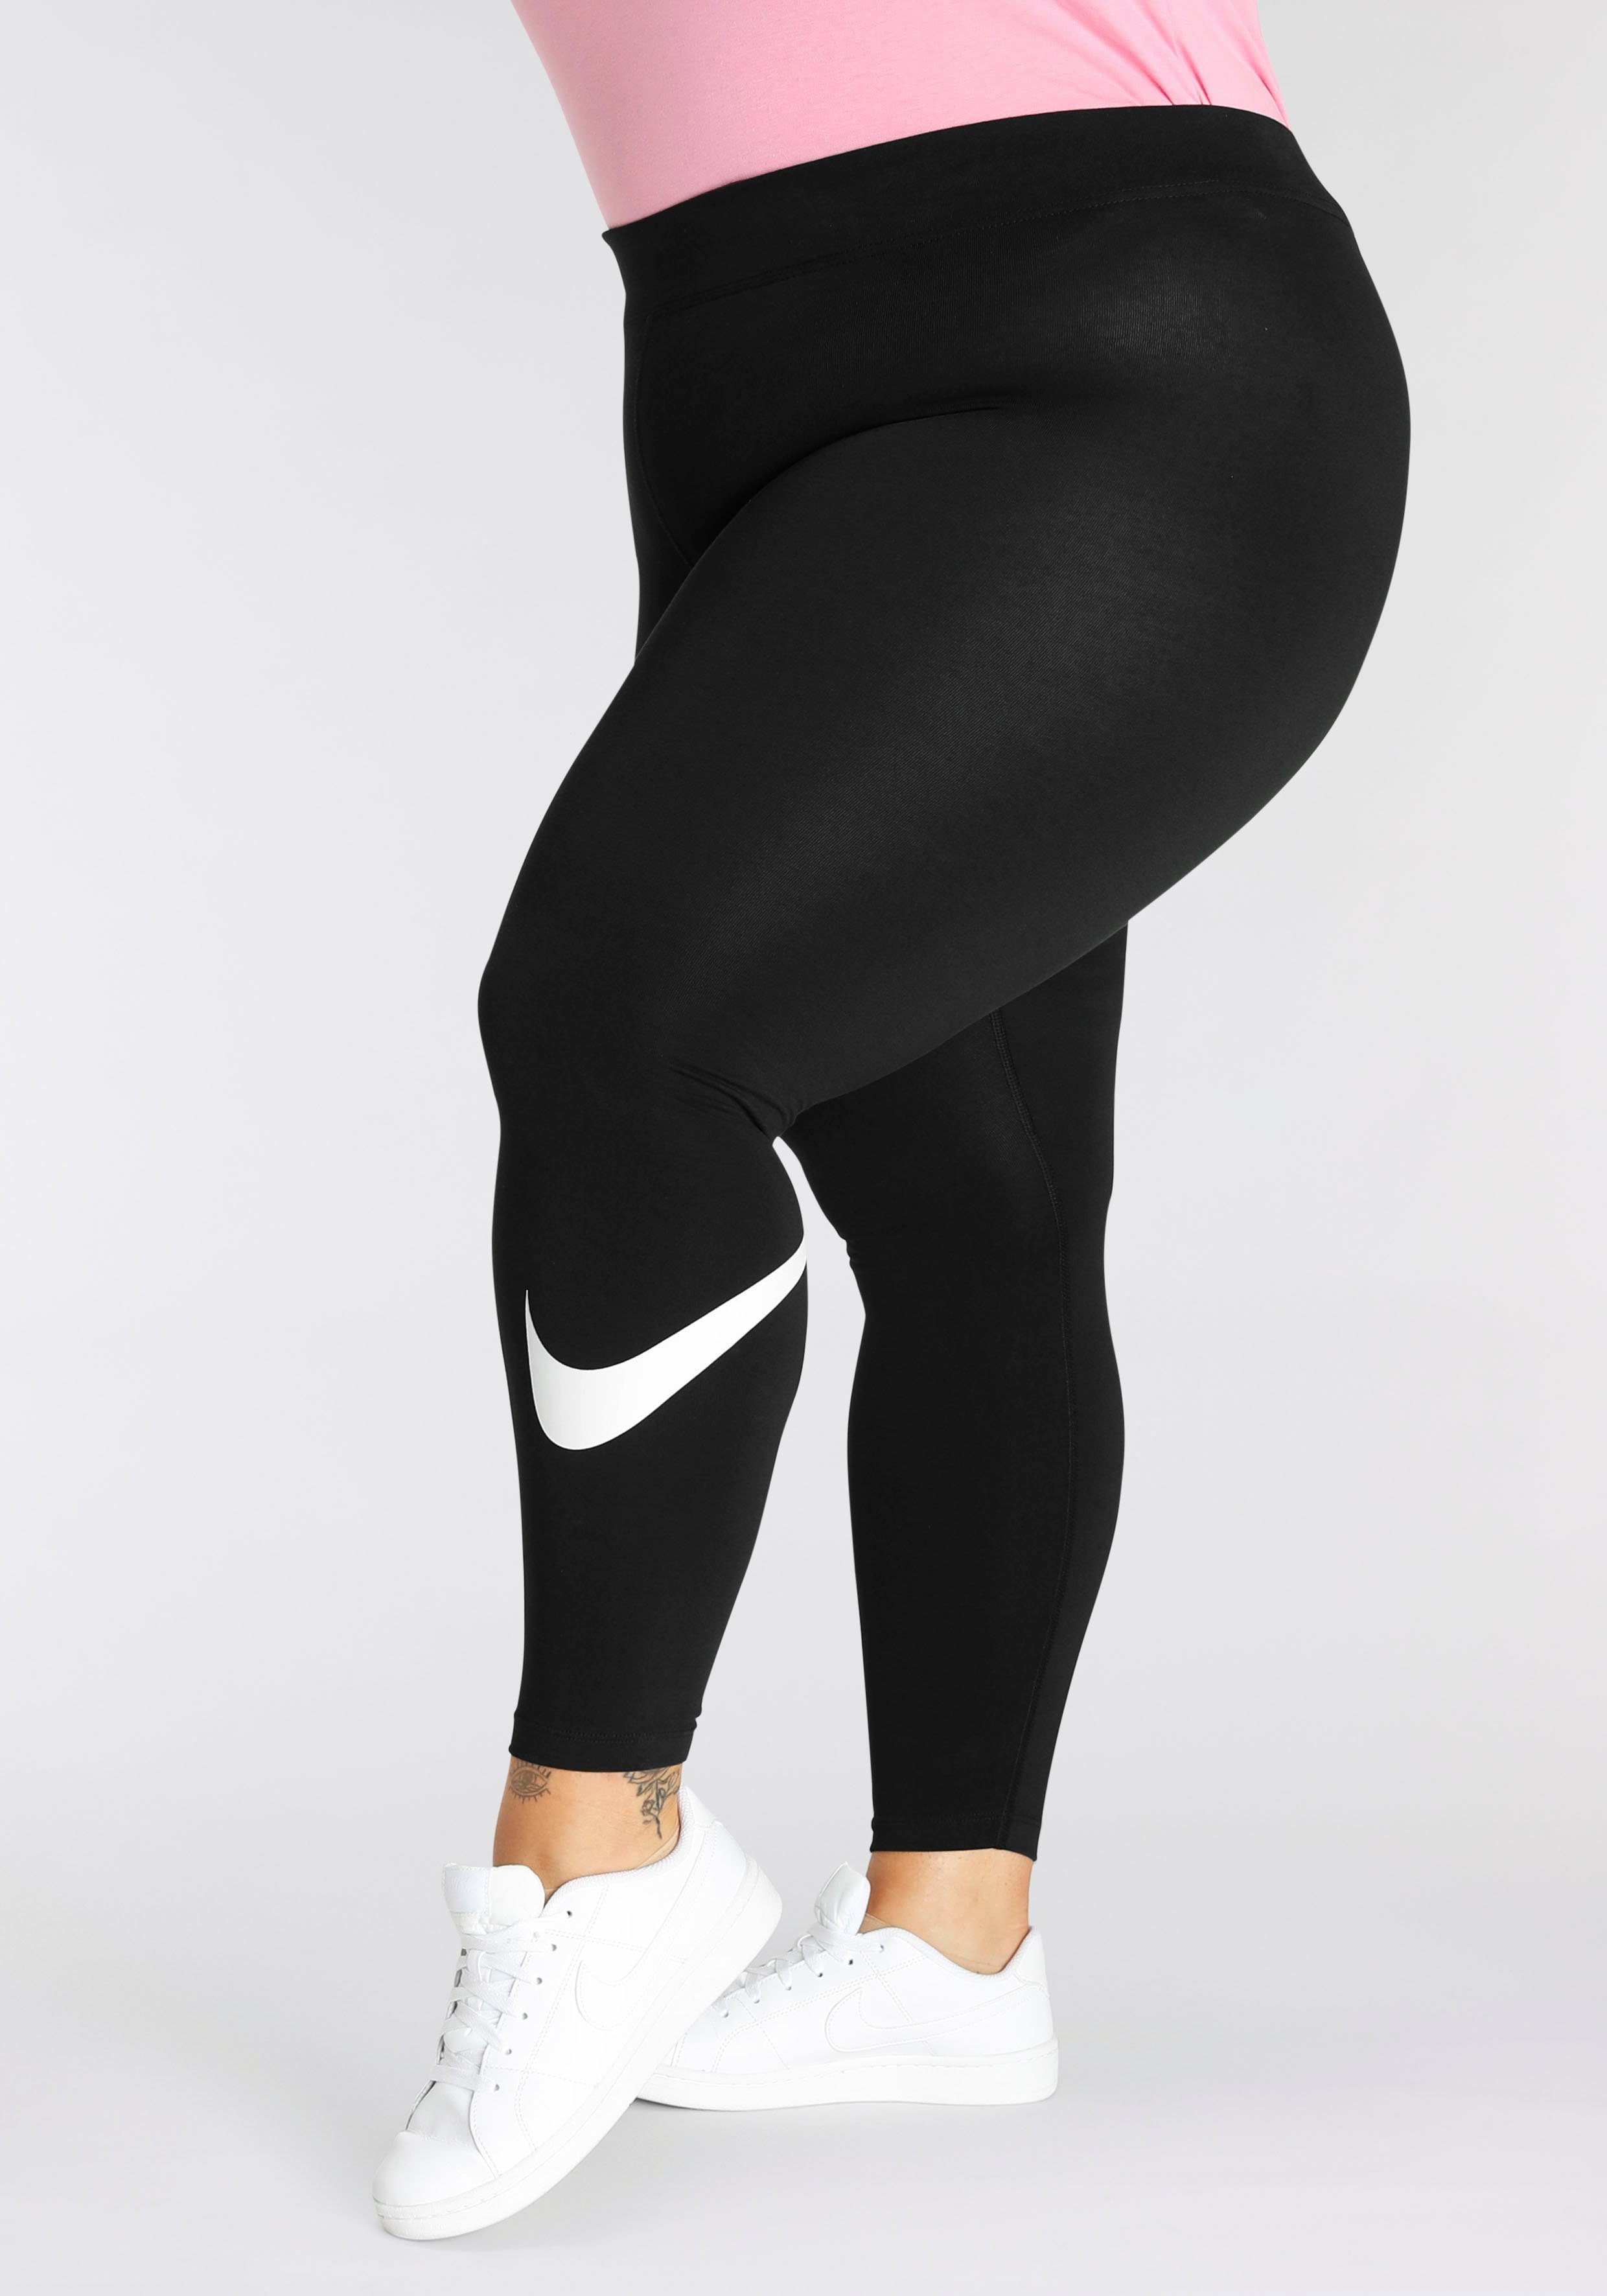 Leggings Leggings (Plus Swoosh Nike Size) Sportswear Mid-Rise Women's Essential